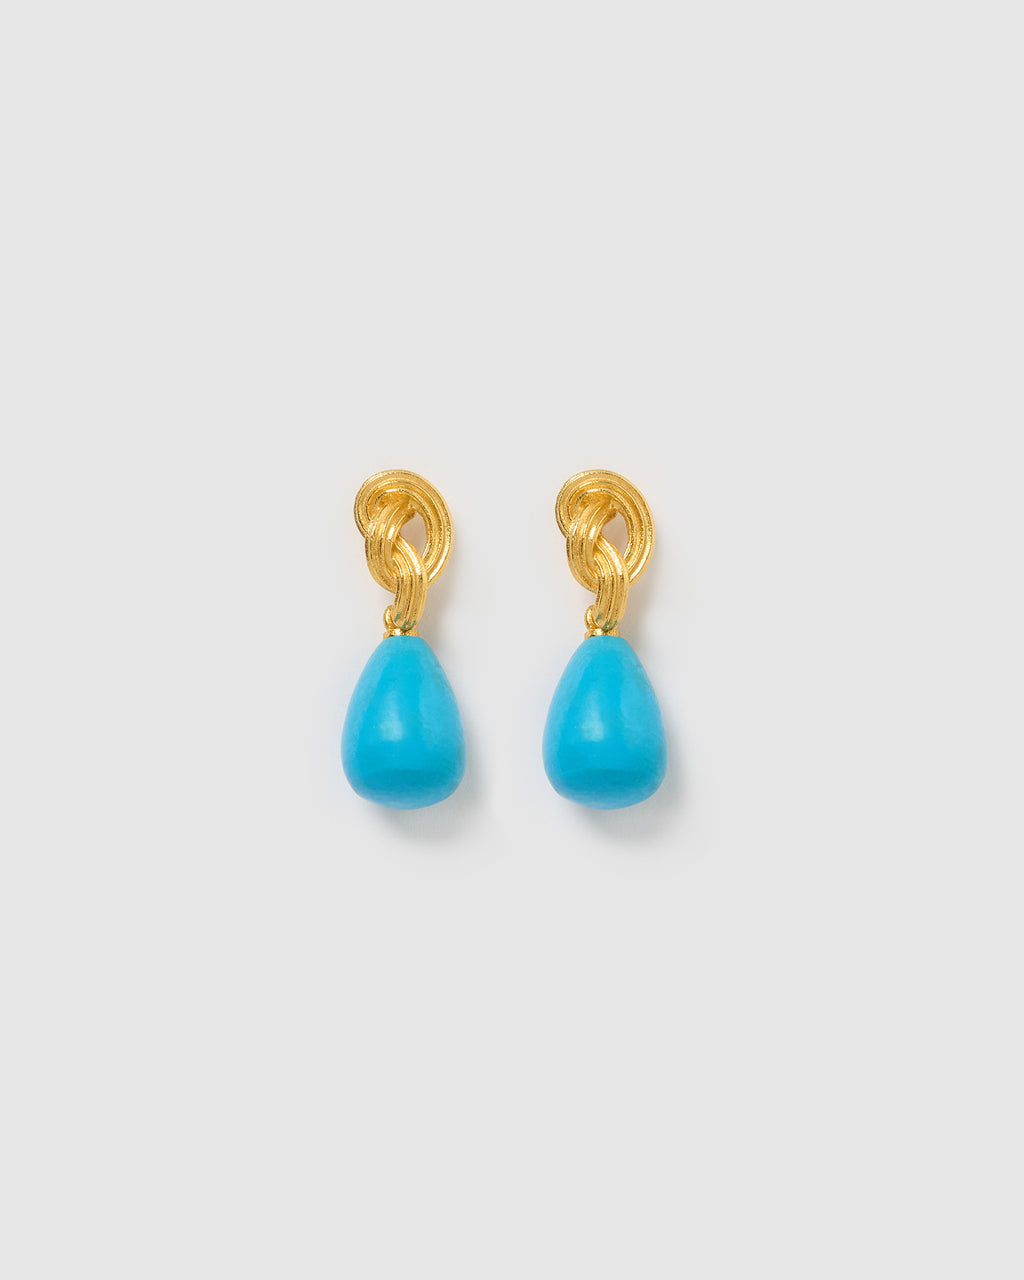 Izoa Petra Earrings Blue Gold